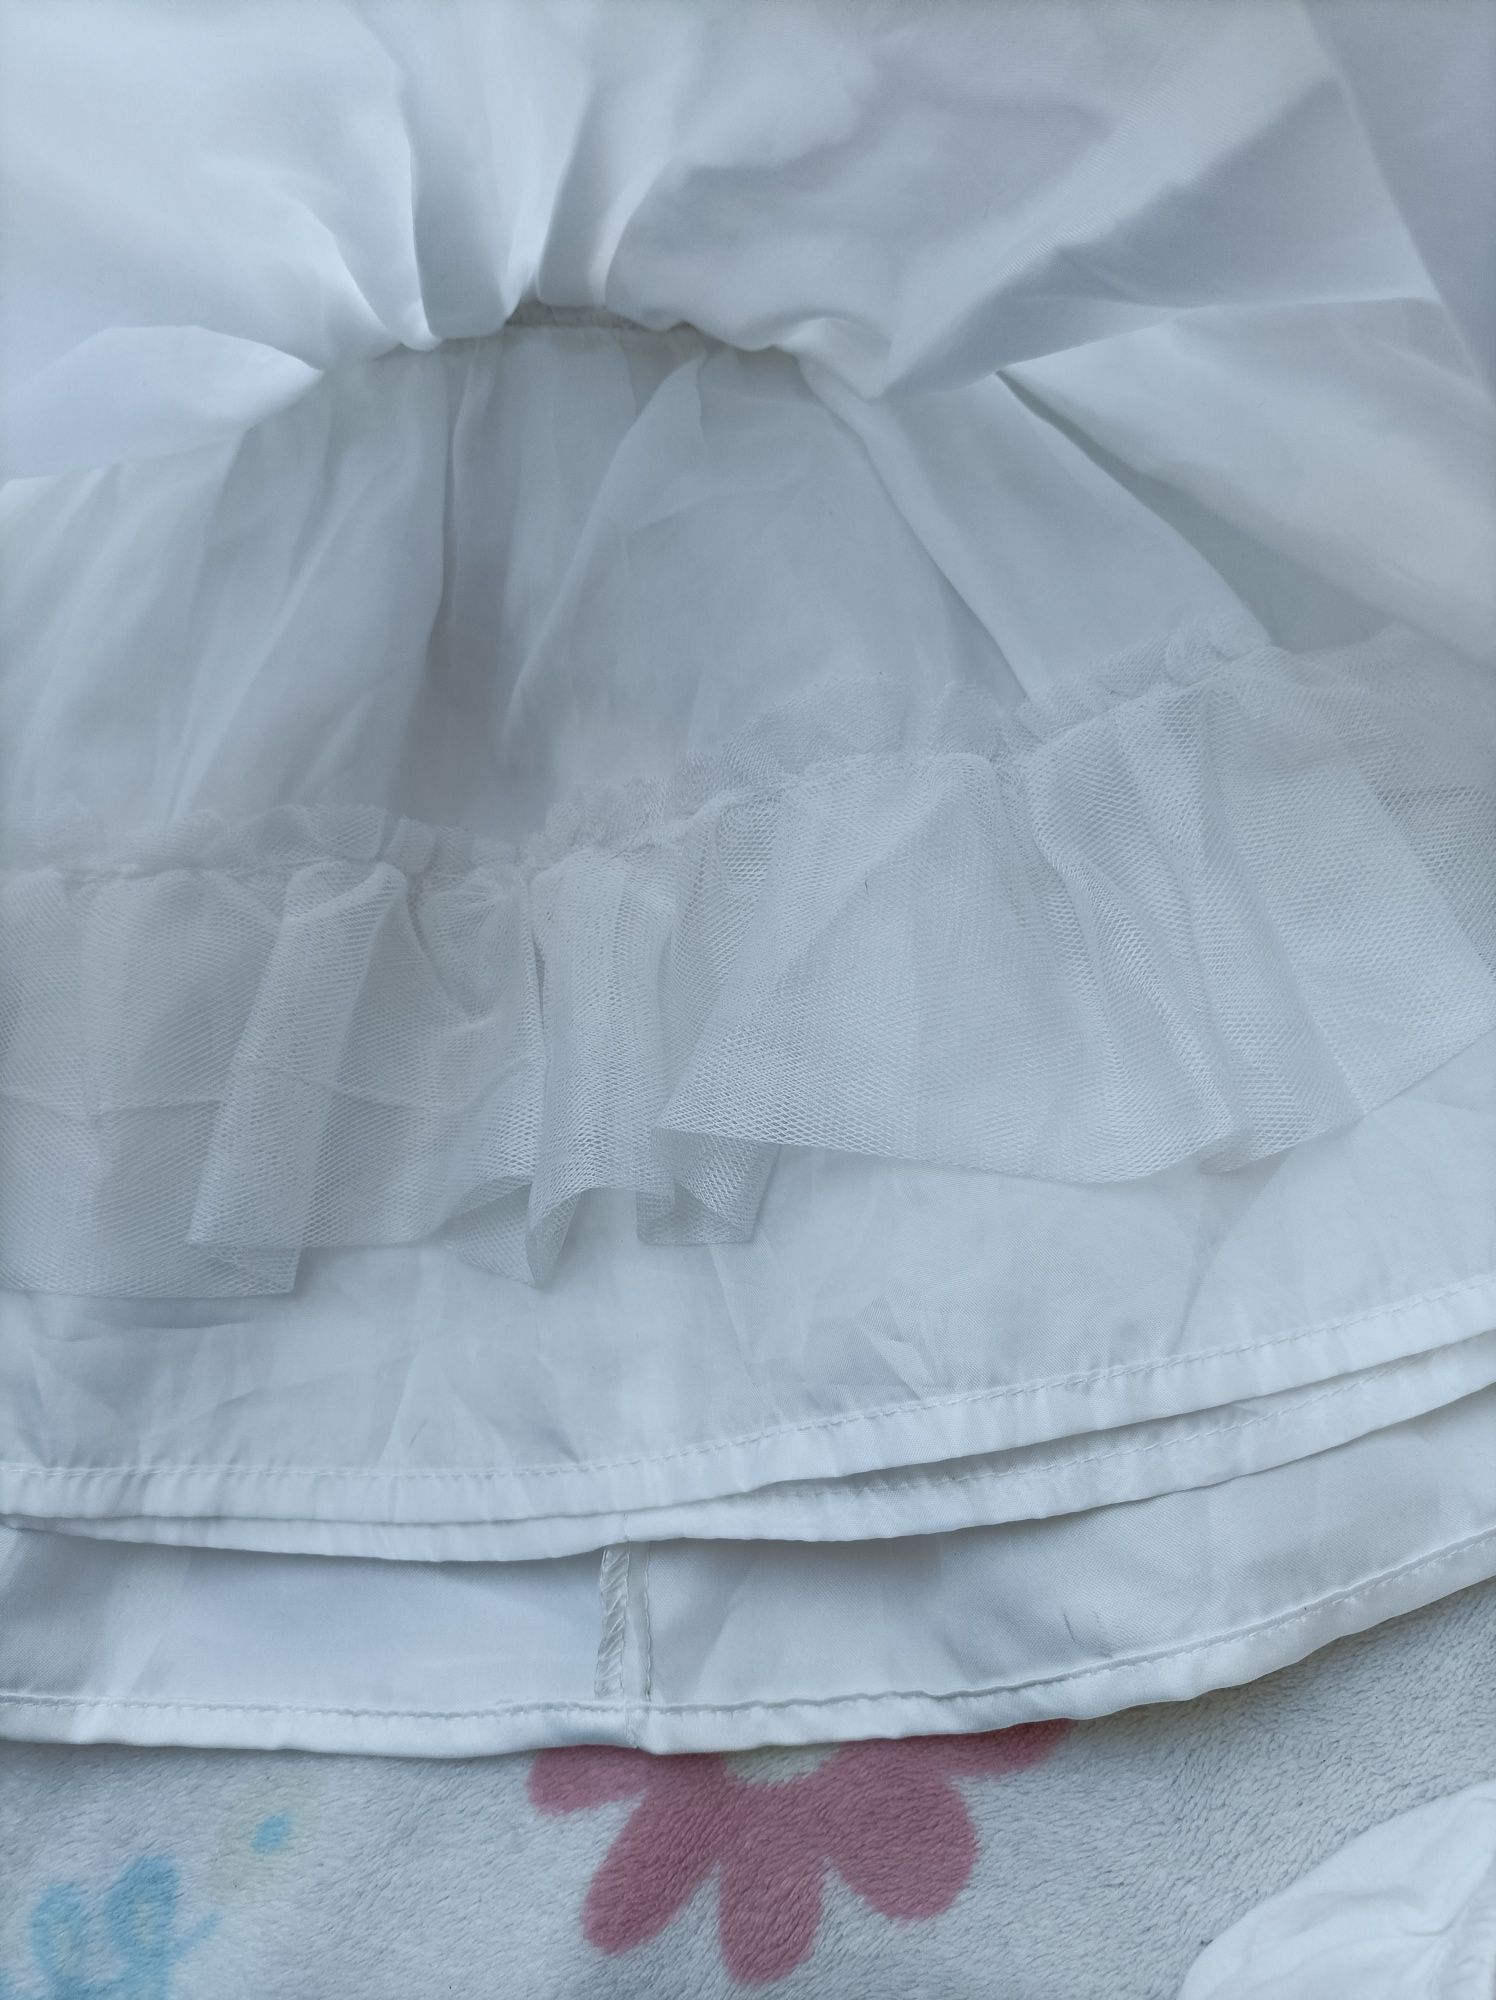 Cool club biała elegancka sukienka do chrztu 6-9 m 74 cm